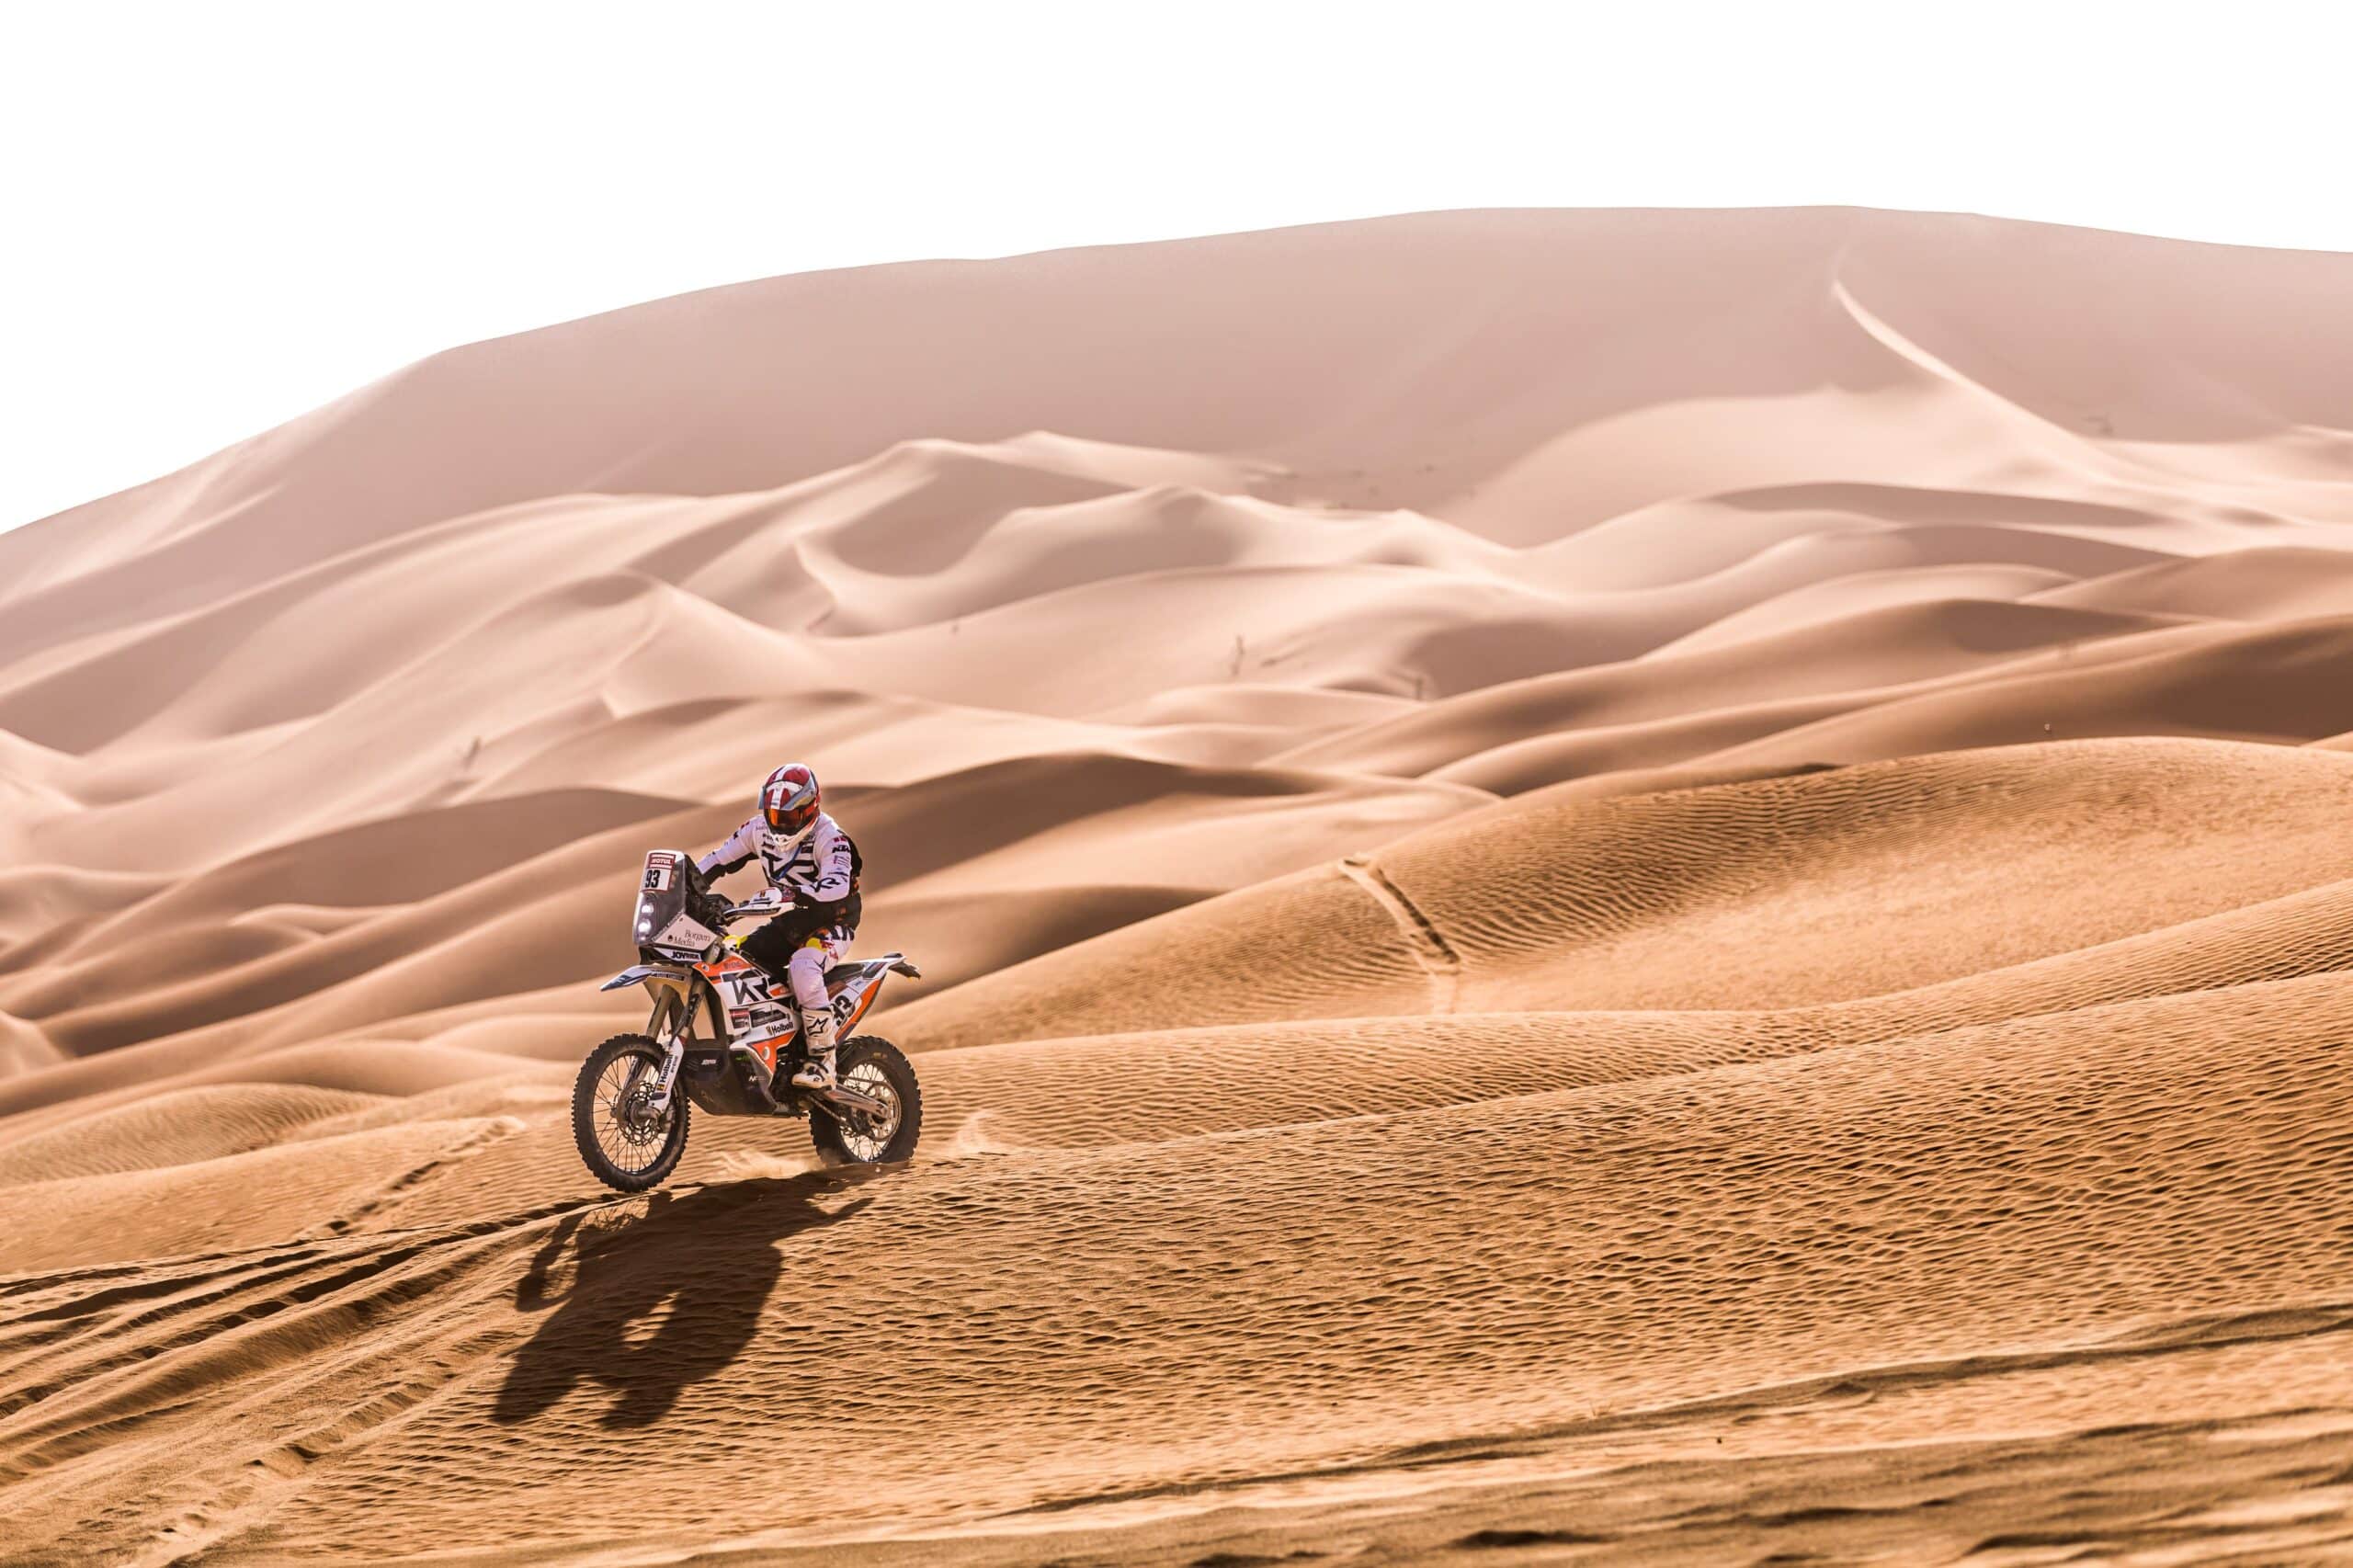 Dakar Rally – Stage 12